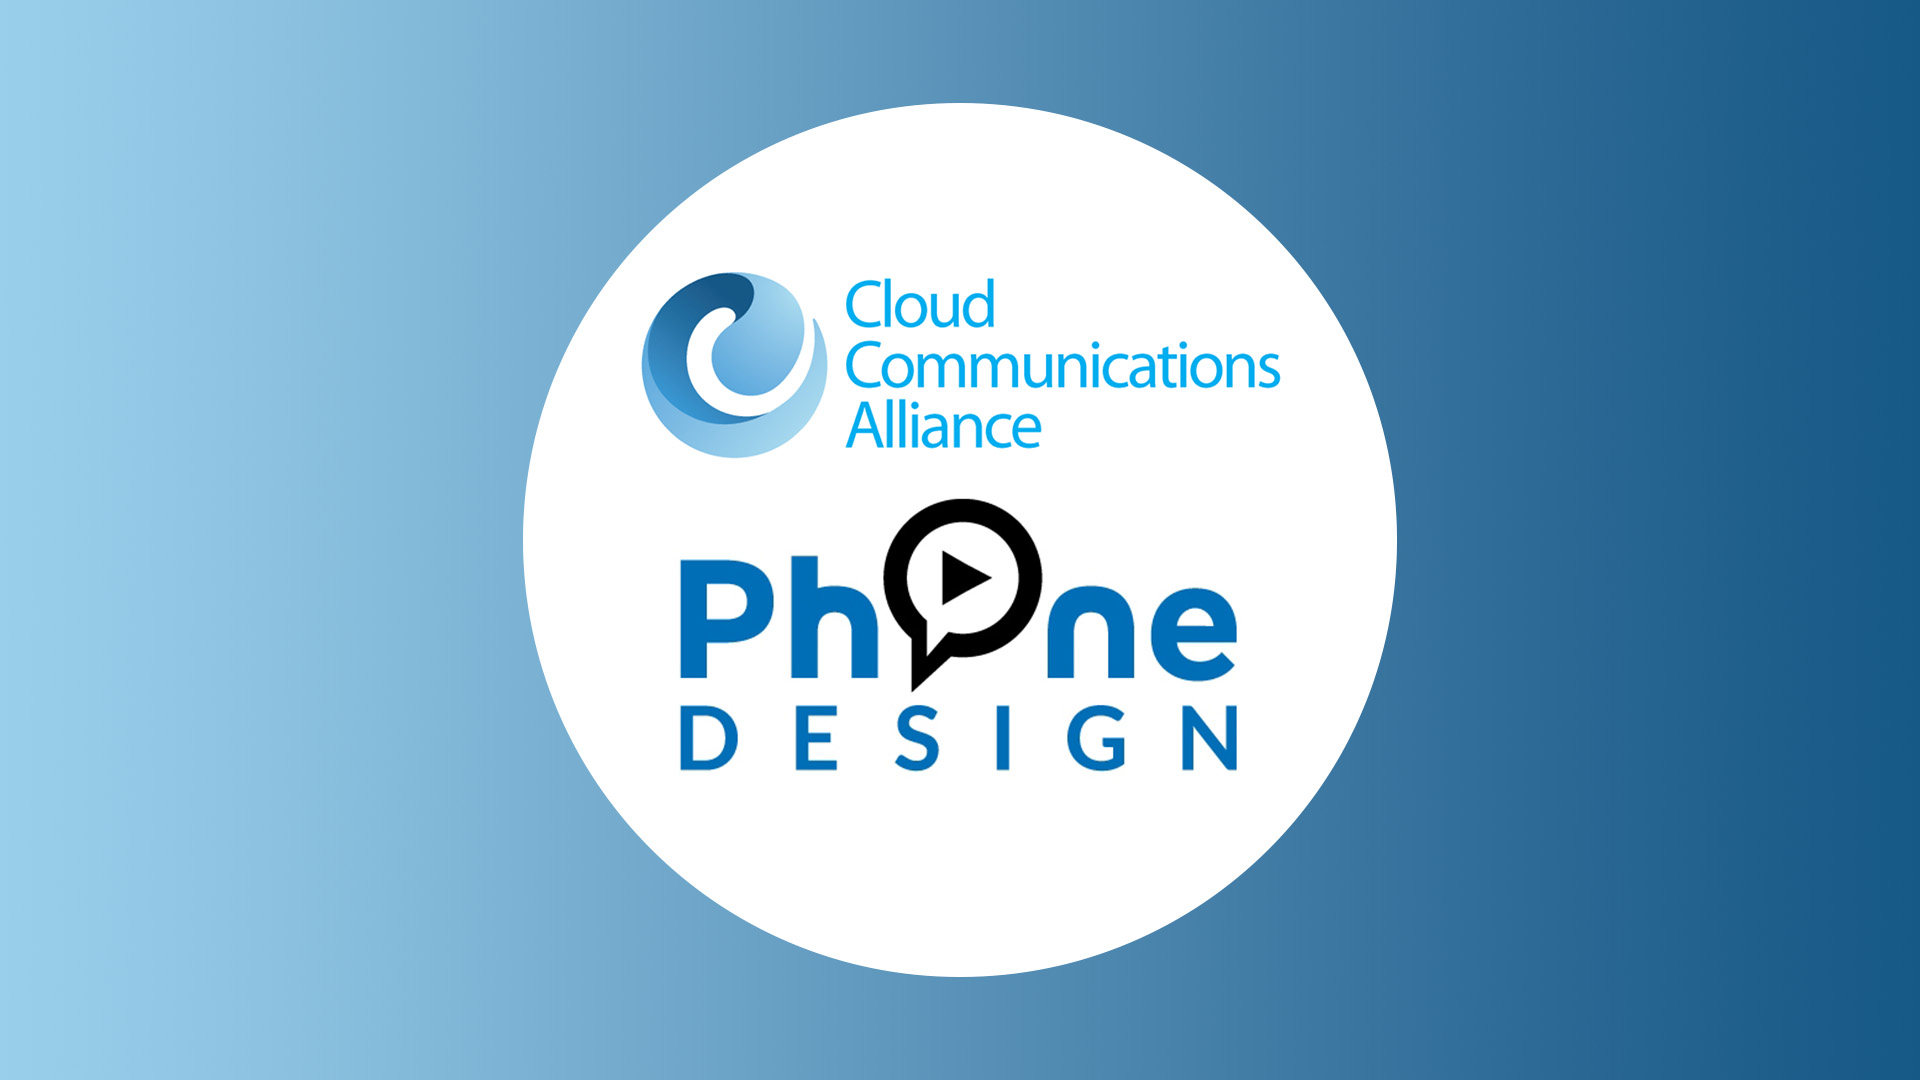 [VIDEO] International : Phone Design a rejoint la Cloud Communication Alliance